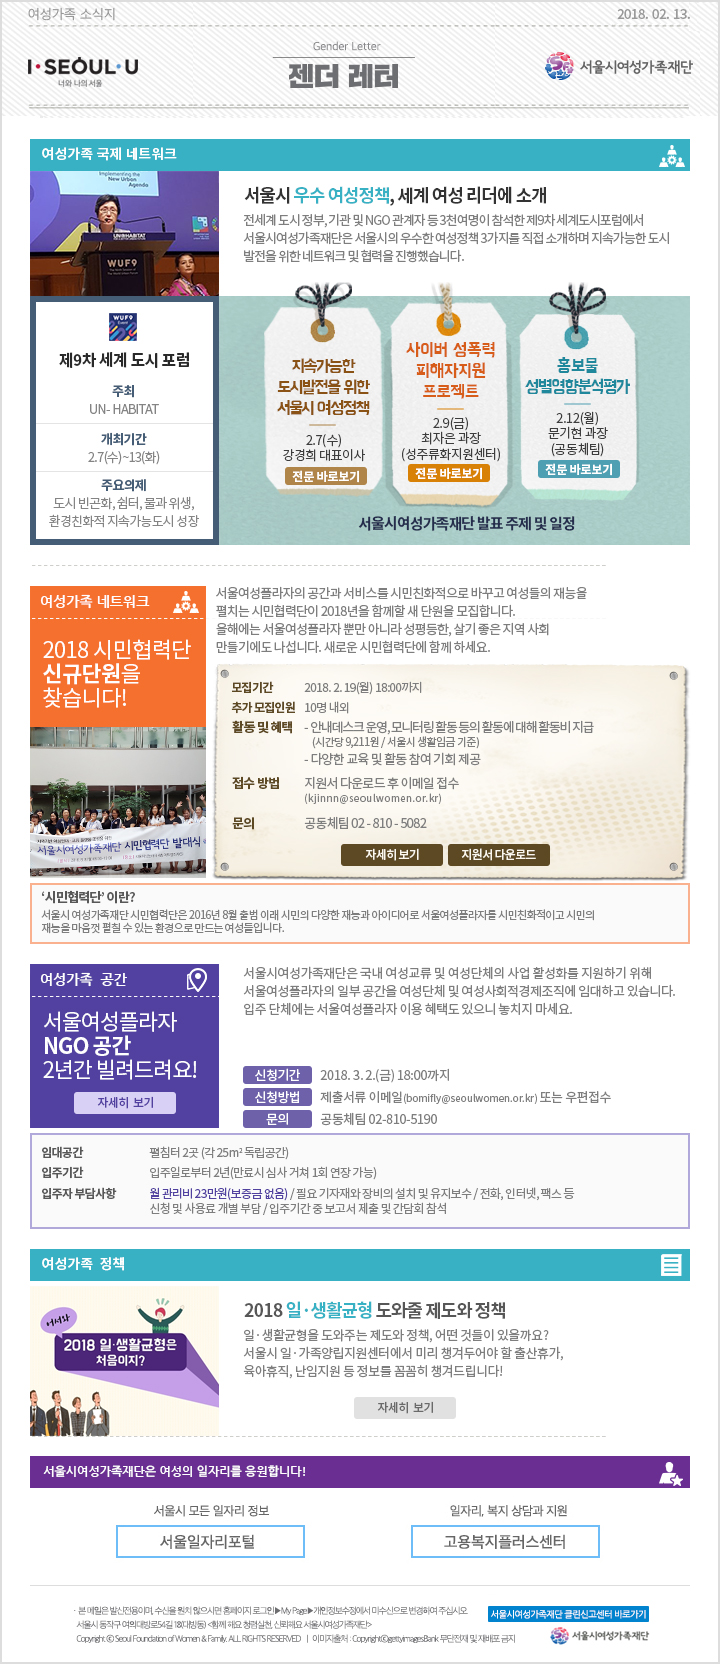 서울시 우수 여성정책, 세계 여성 리더에 소개